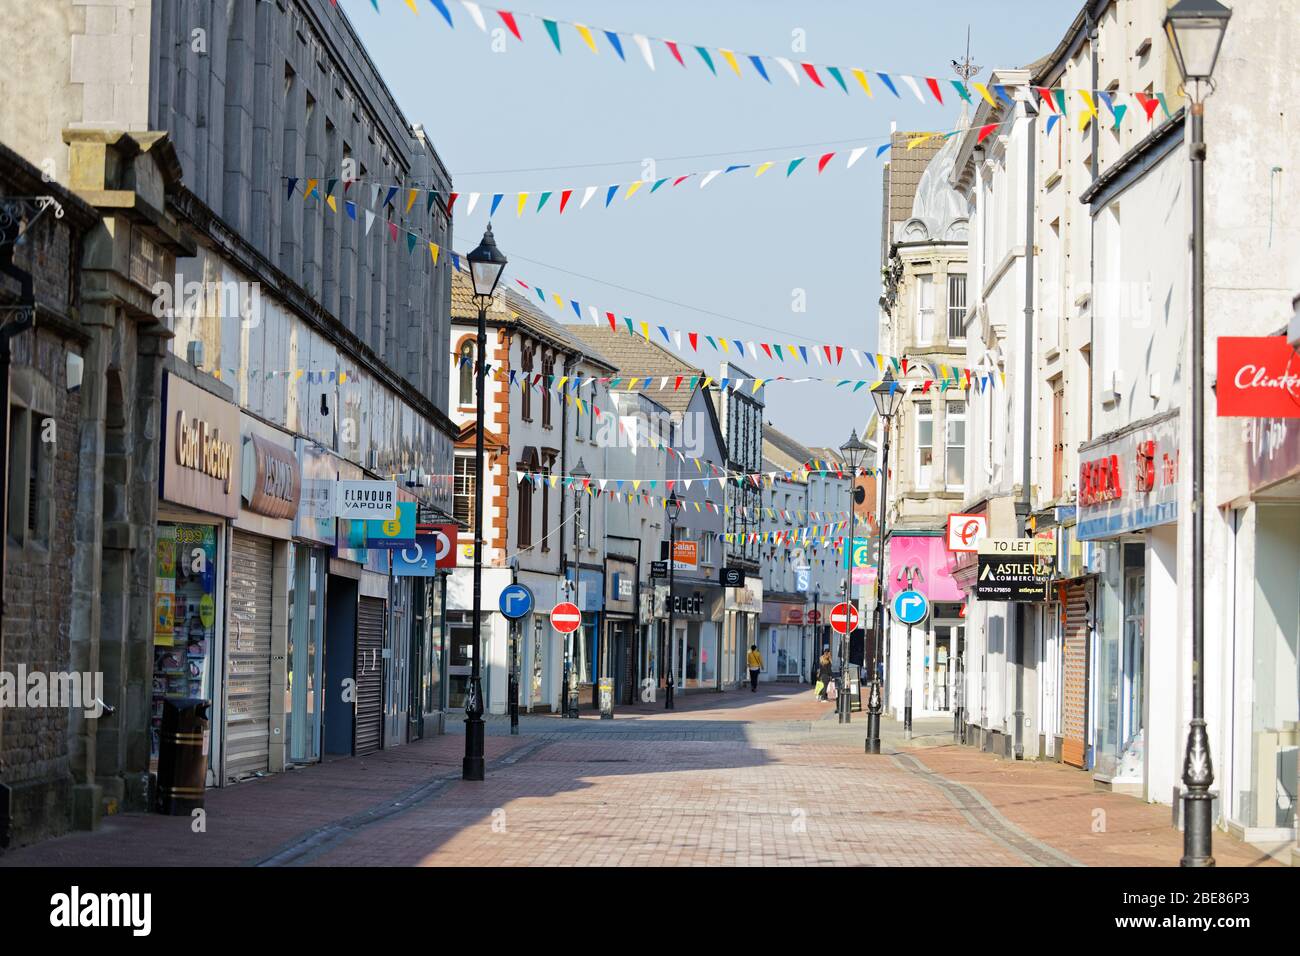 Im Bild: Die verlassene Green Street im Stadtzentrum von Neath, Wales, Großbritannien. Freitag 27 März 2020 Re: Covid-19 Coronavirus Pandemie, UK. Stockfoto